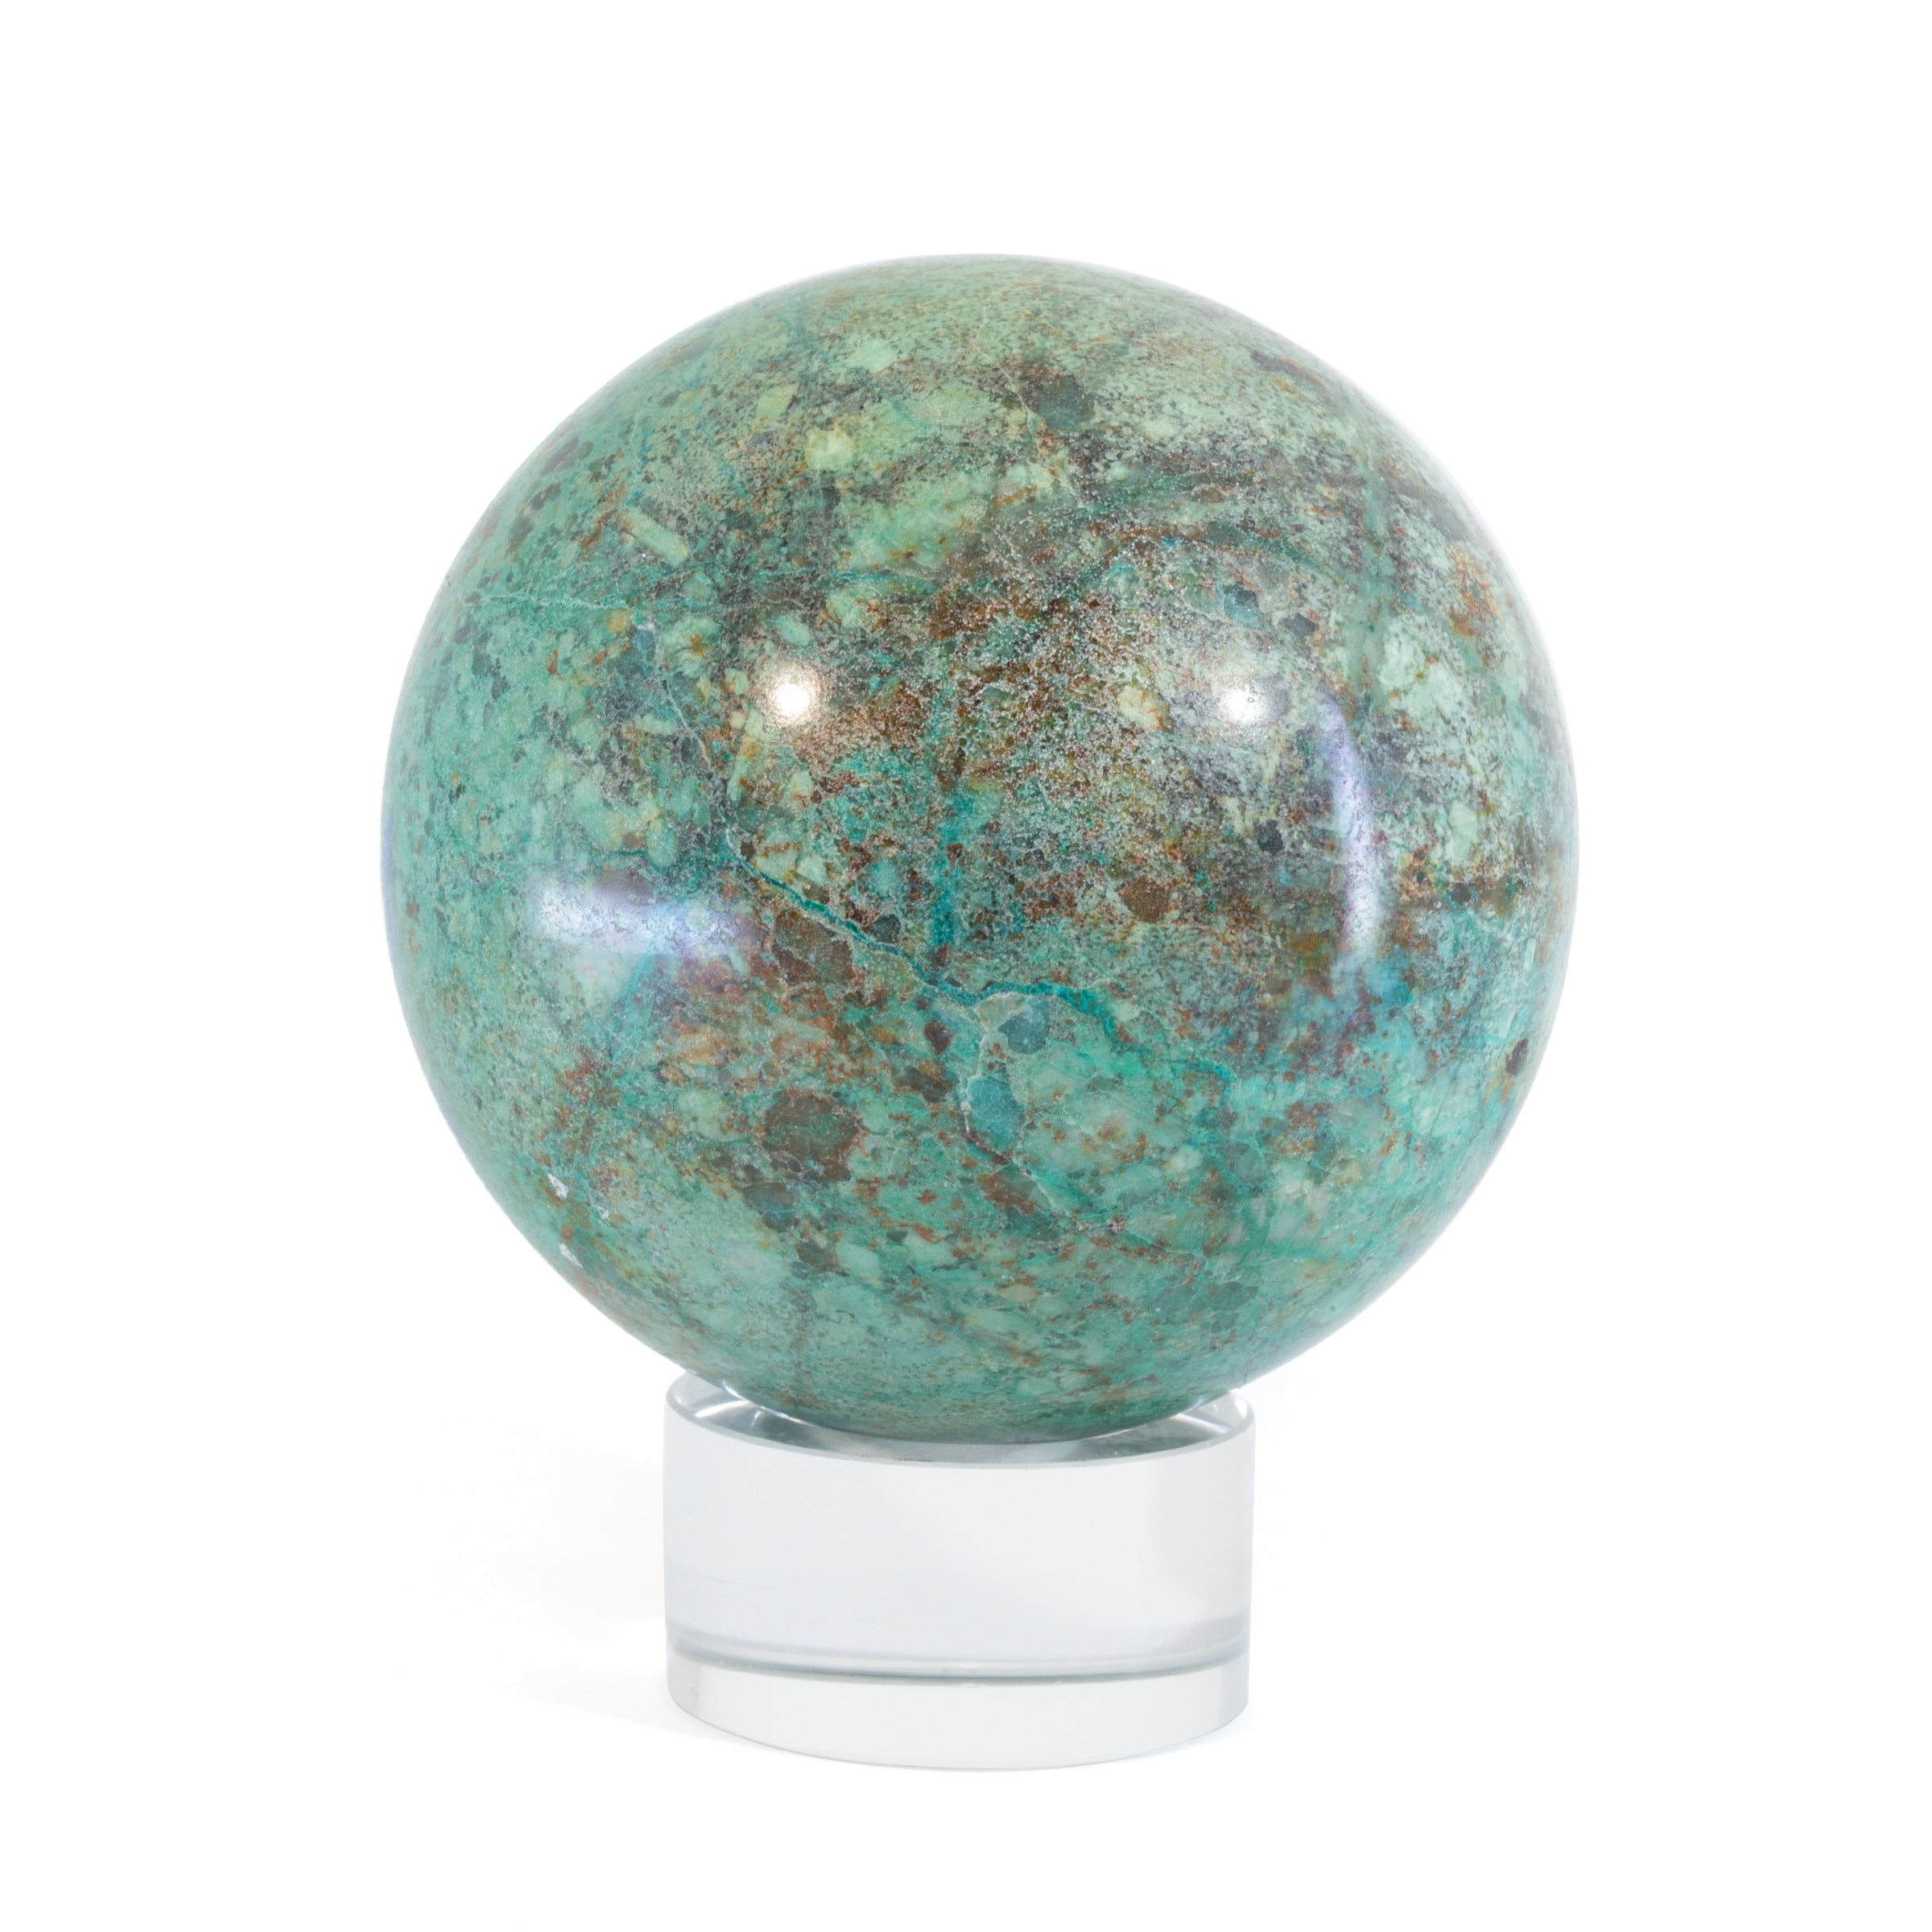 Chrysocolla 2.9 inch 1.35lb Polished Crystal Sphere - Arizona, USA - AAL-067 - Crystalarium